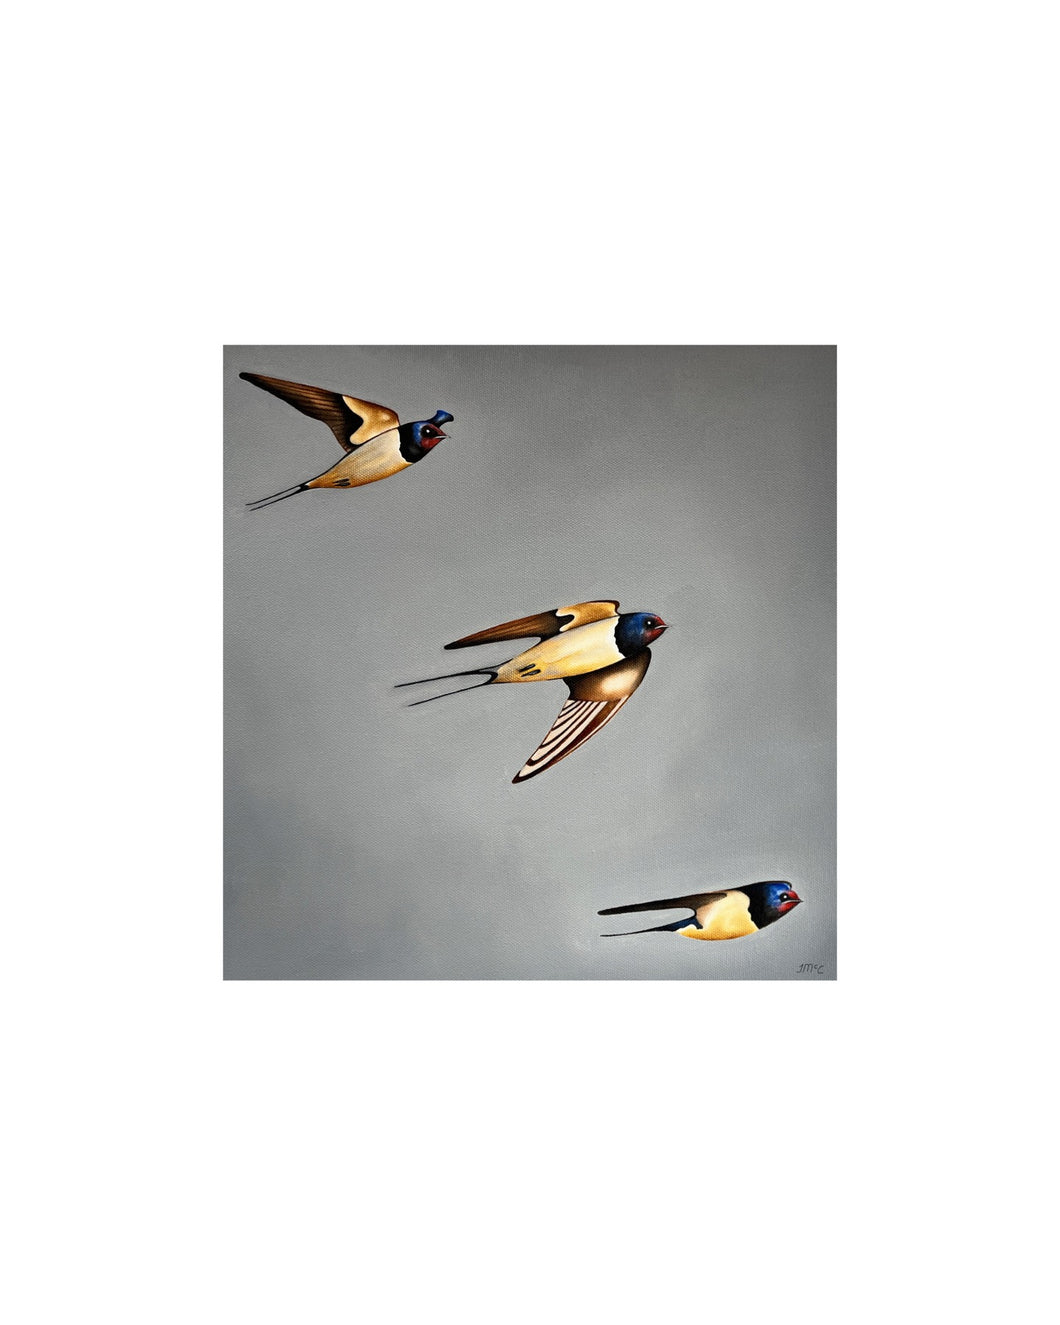 Swallows: Mid-flight